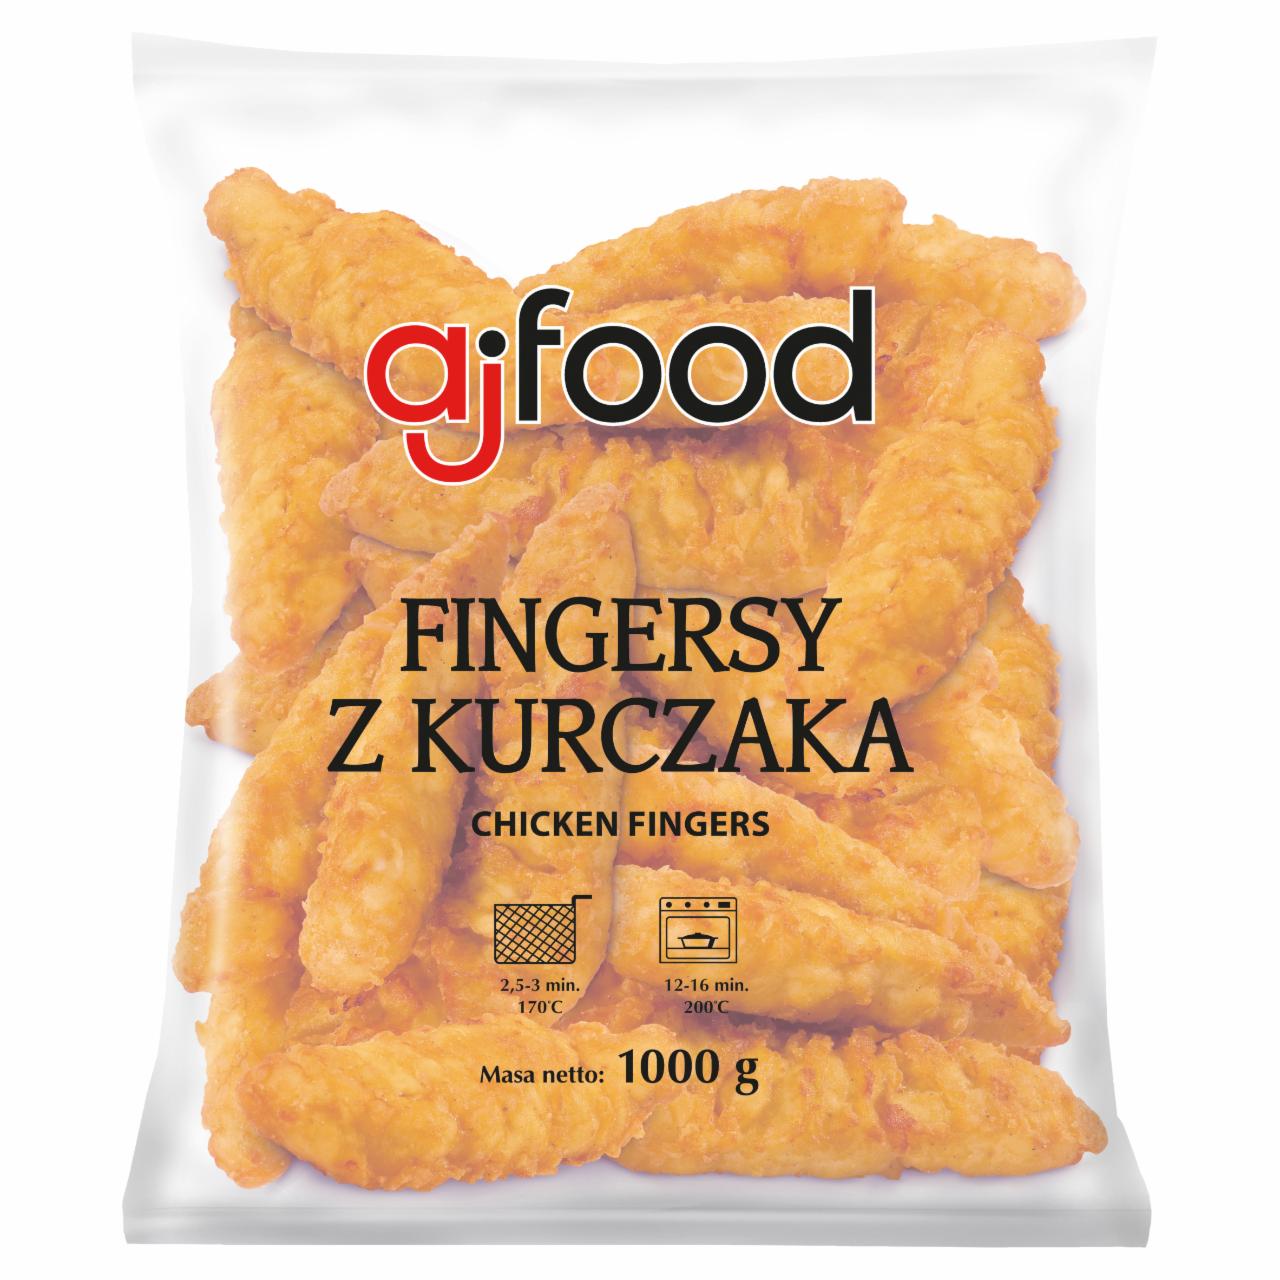 Zdjęcia - aj food Fingersy z kurczaka 1000 g